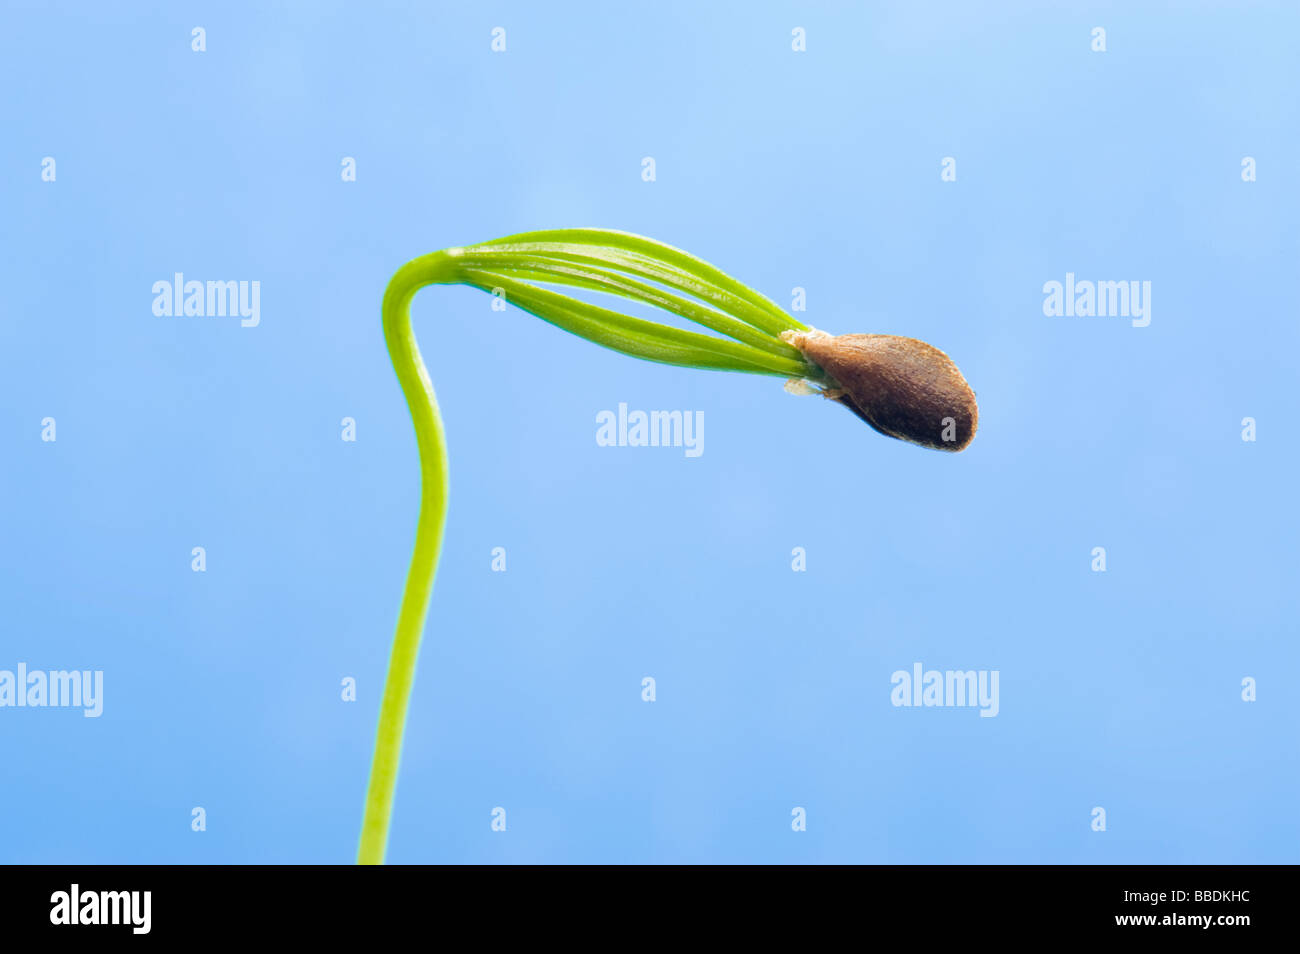 Arbre généalogique des graines de conifères déplier déplier cotylédon feuille semences germent de germe de sperme de germination vert nouveau cône de conifères de propagation Banque D'Images